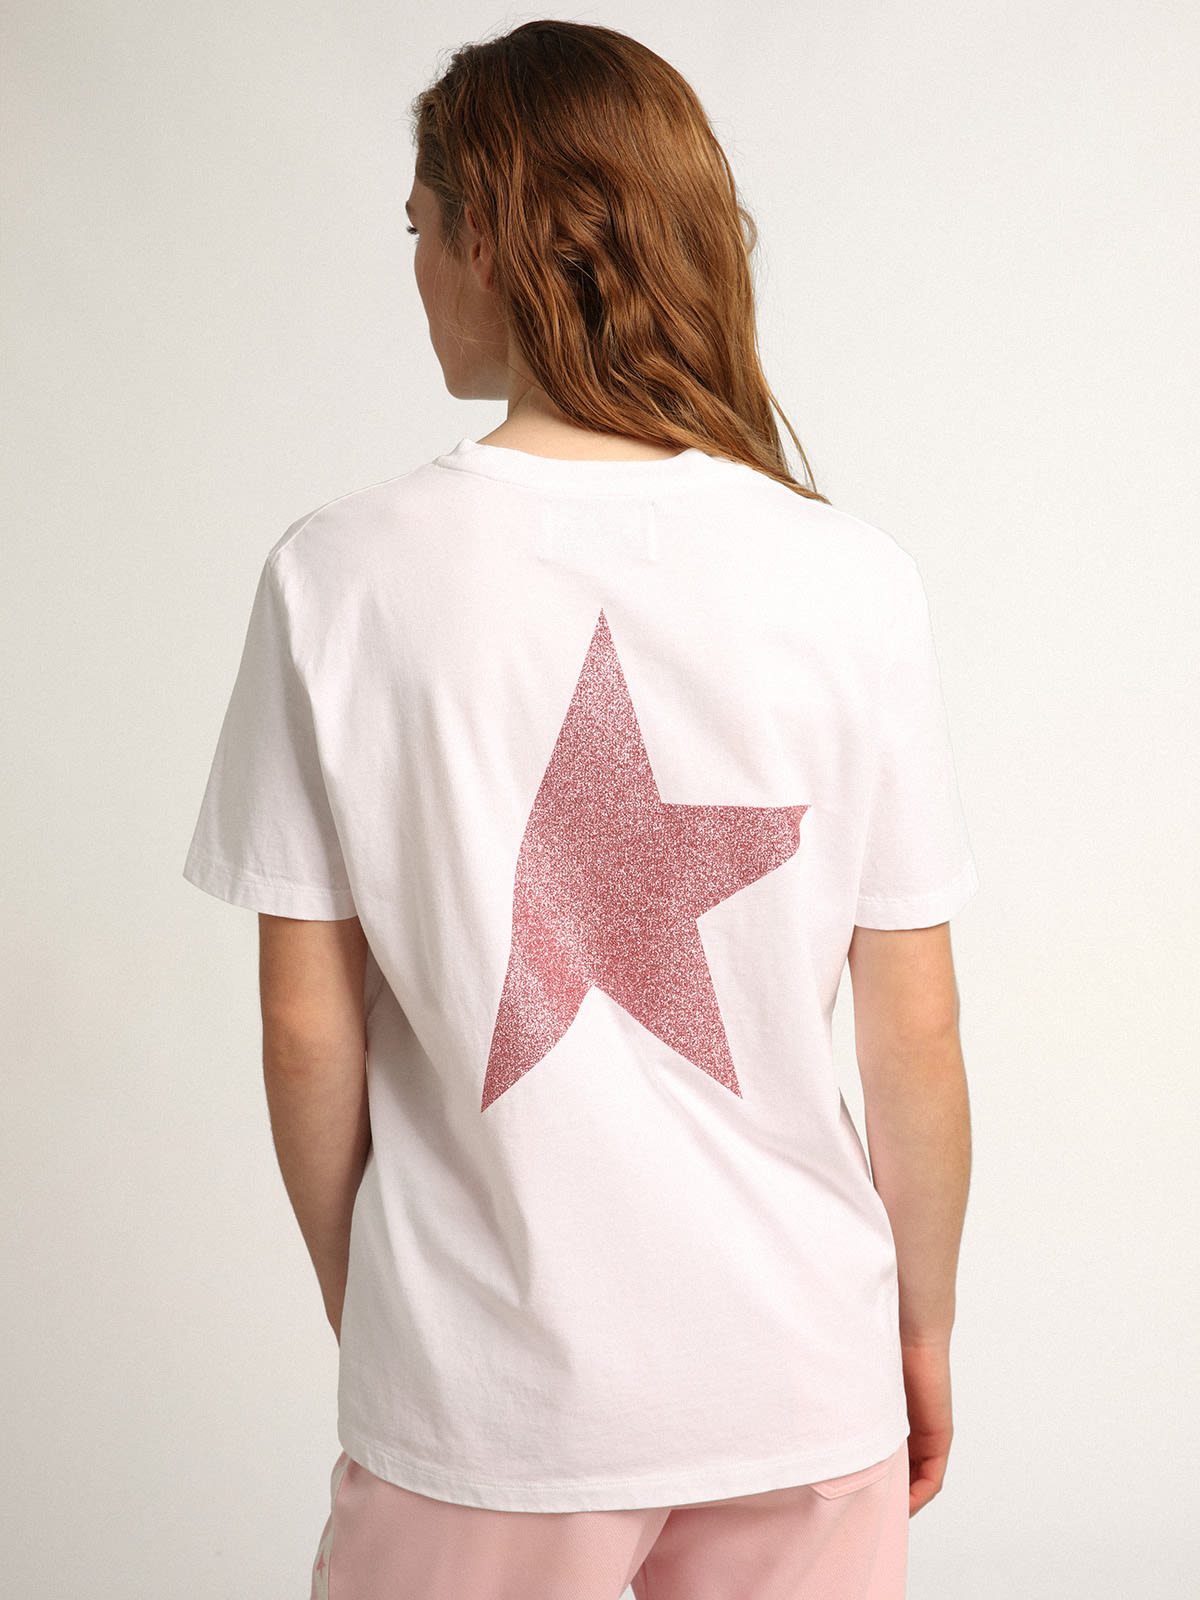 Golden Goose - Camiseta blanca con logo y estrella de purpurina rosa para mujer in 